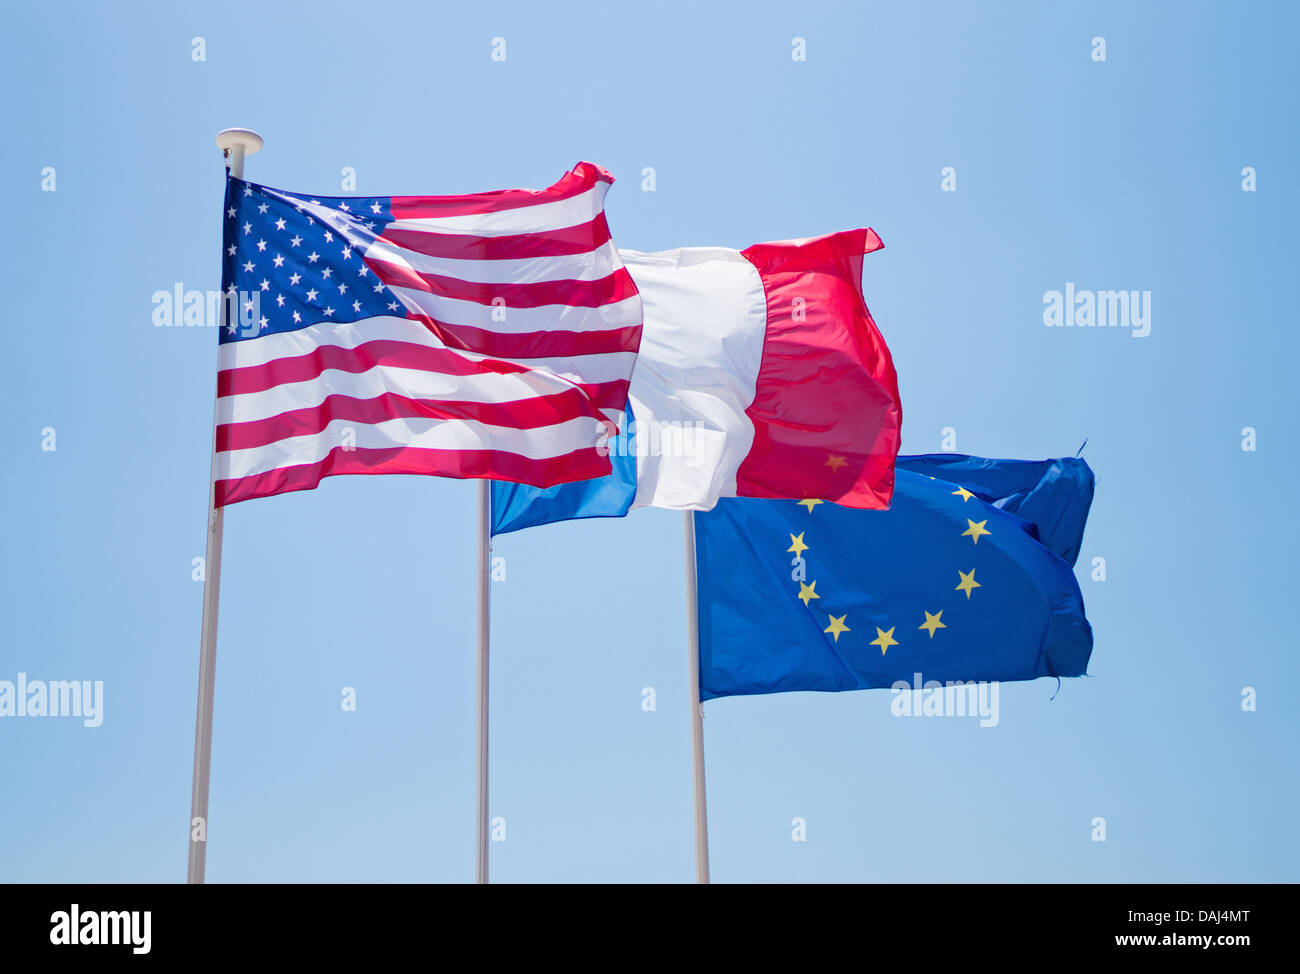 Banderas nacionales de Estados Unidos y Francia con la CEE Bandera, sobrevolando el promenade en Niza, Francia Foto de stock